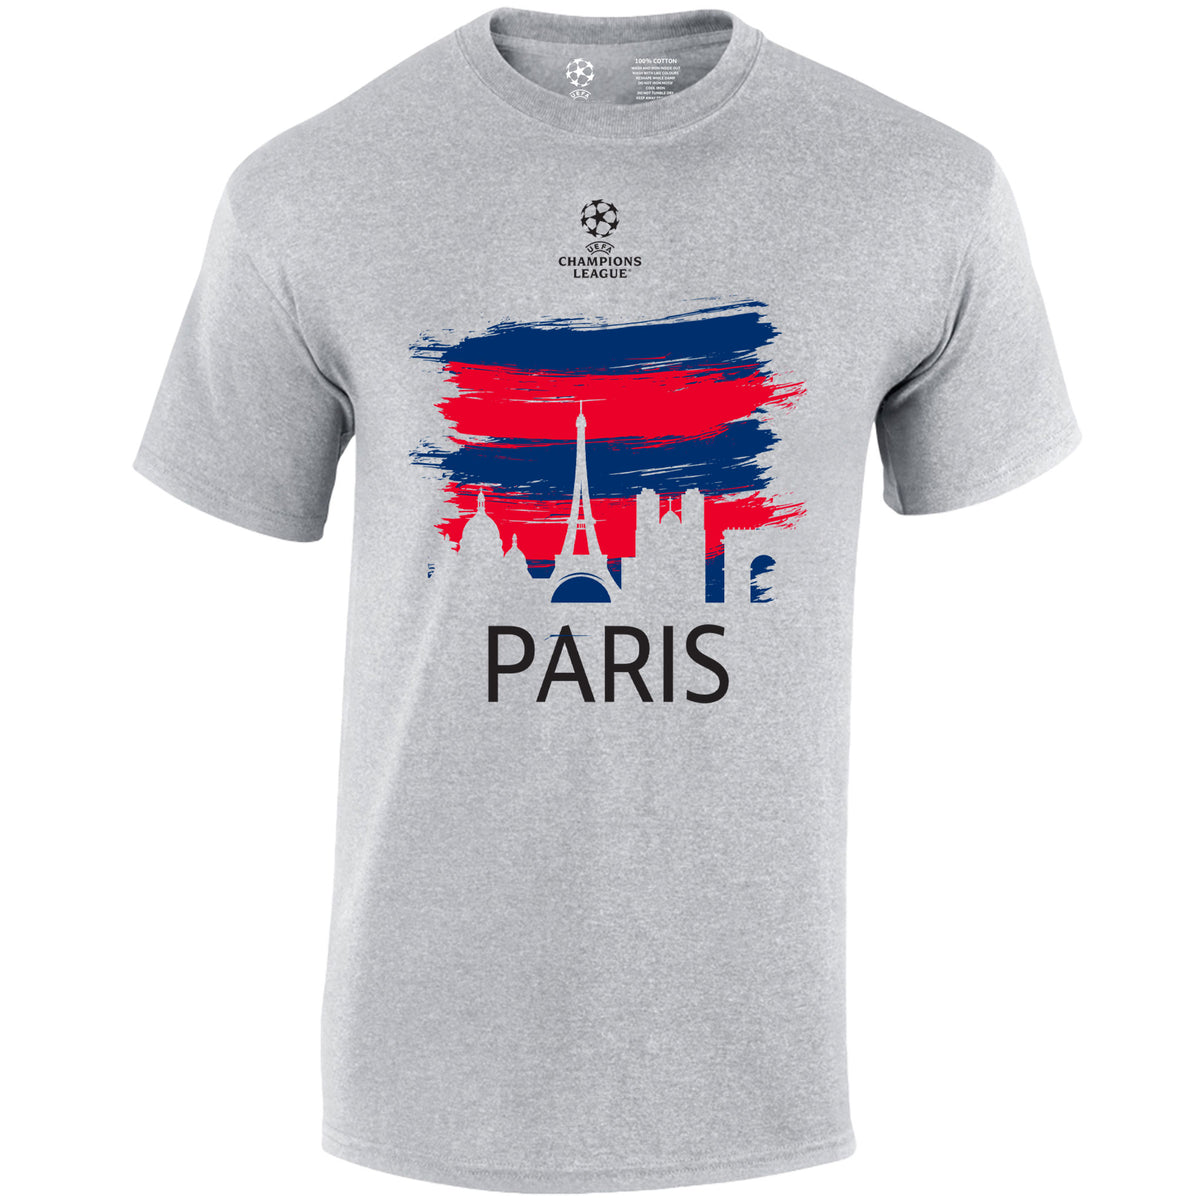 Champions League Paris City Painted Skyline T-Shirt Grey